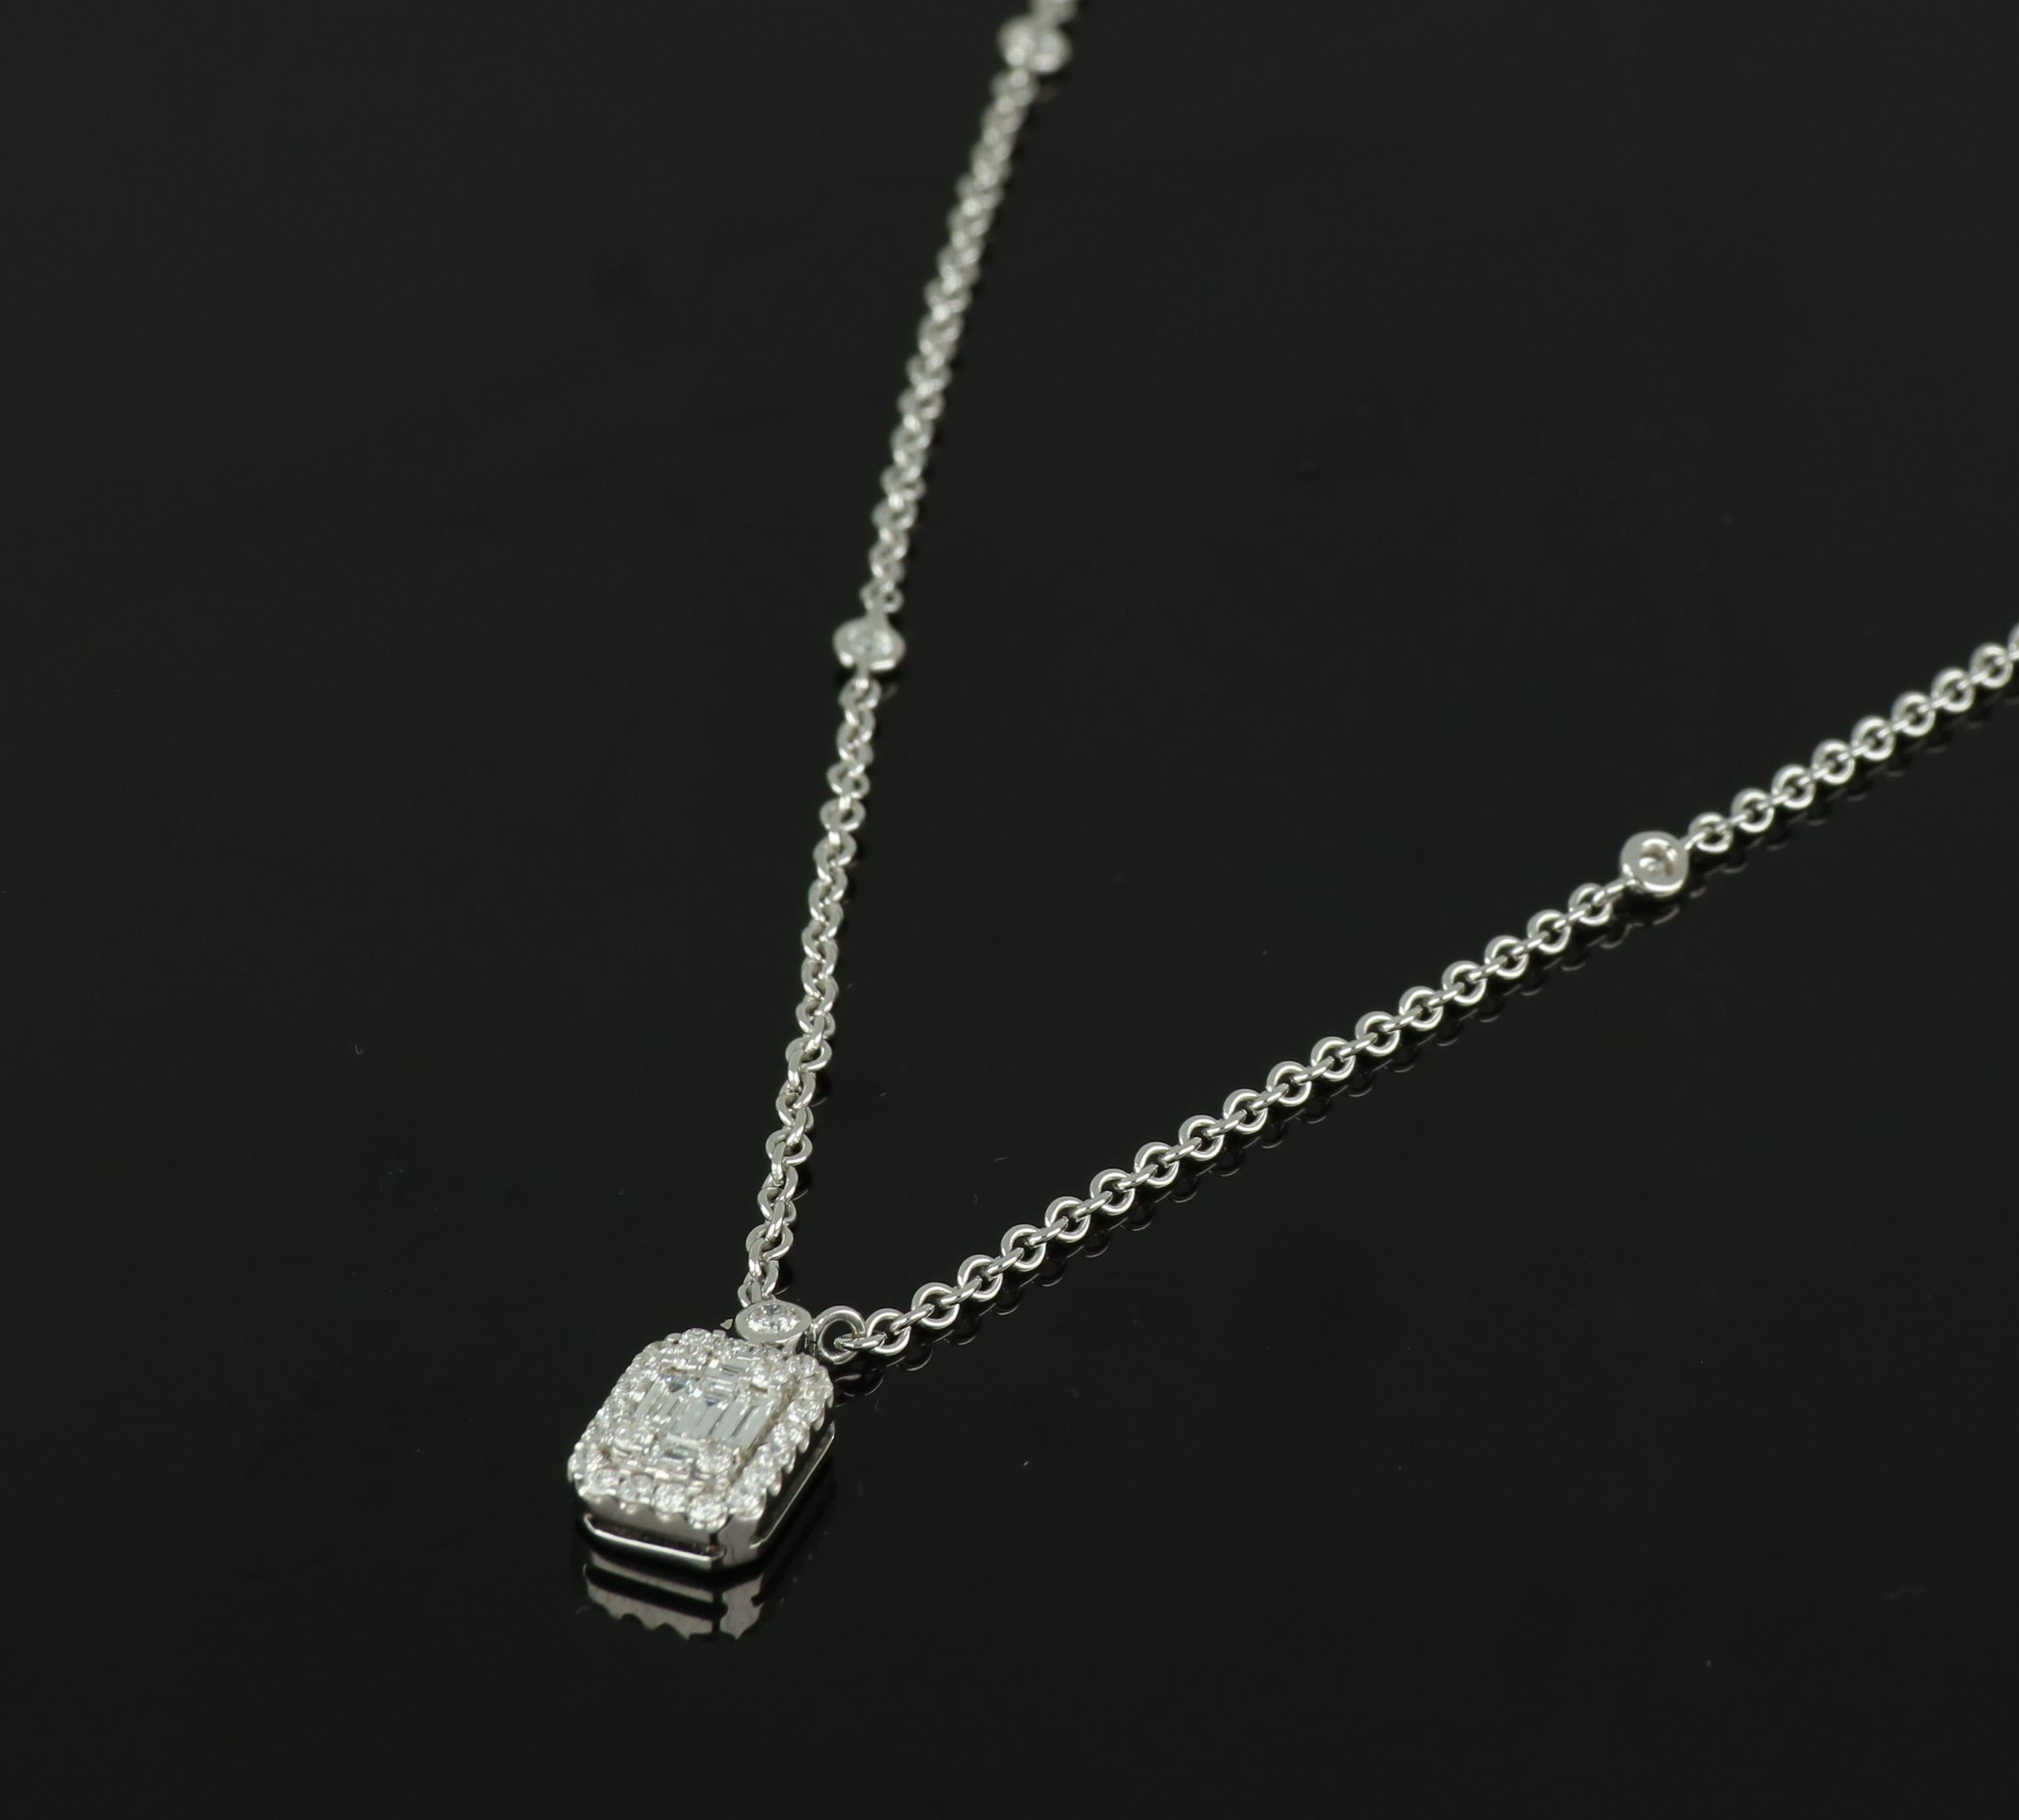 Ce pendentif exquis en or blanc 18 carats de la marque Amwaj jewellery est composé d'un diamant carat, présentant la beauté architecturale d'une taille émeraude, serti sur une chaîne en or blanc délicate et épurée et entouré d'un halo de diamants